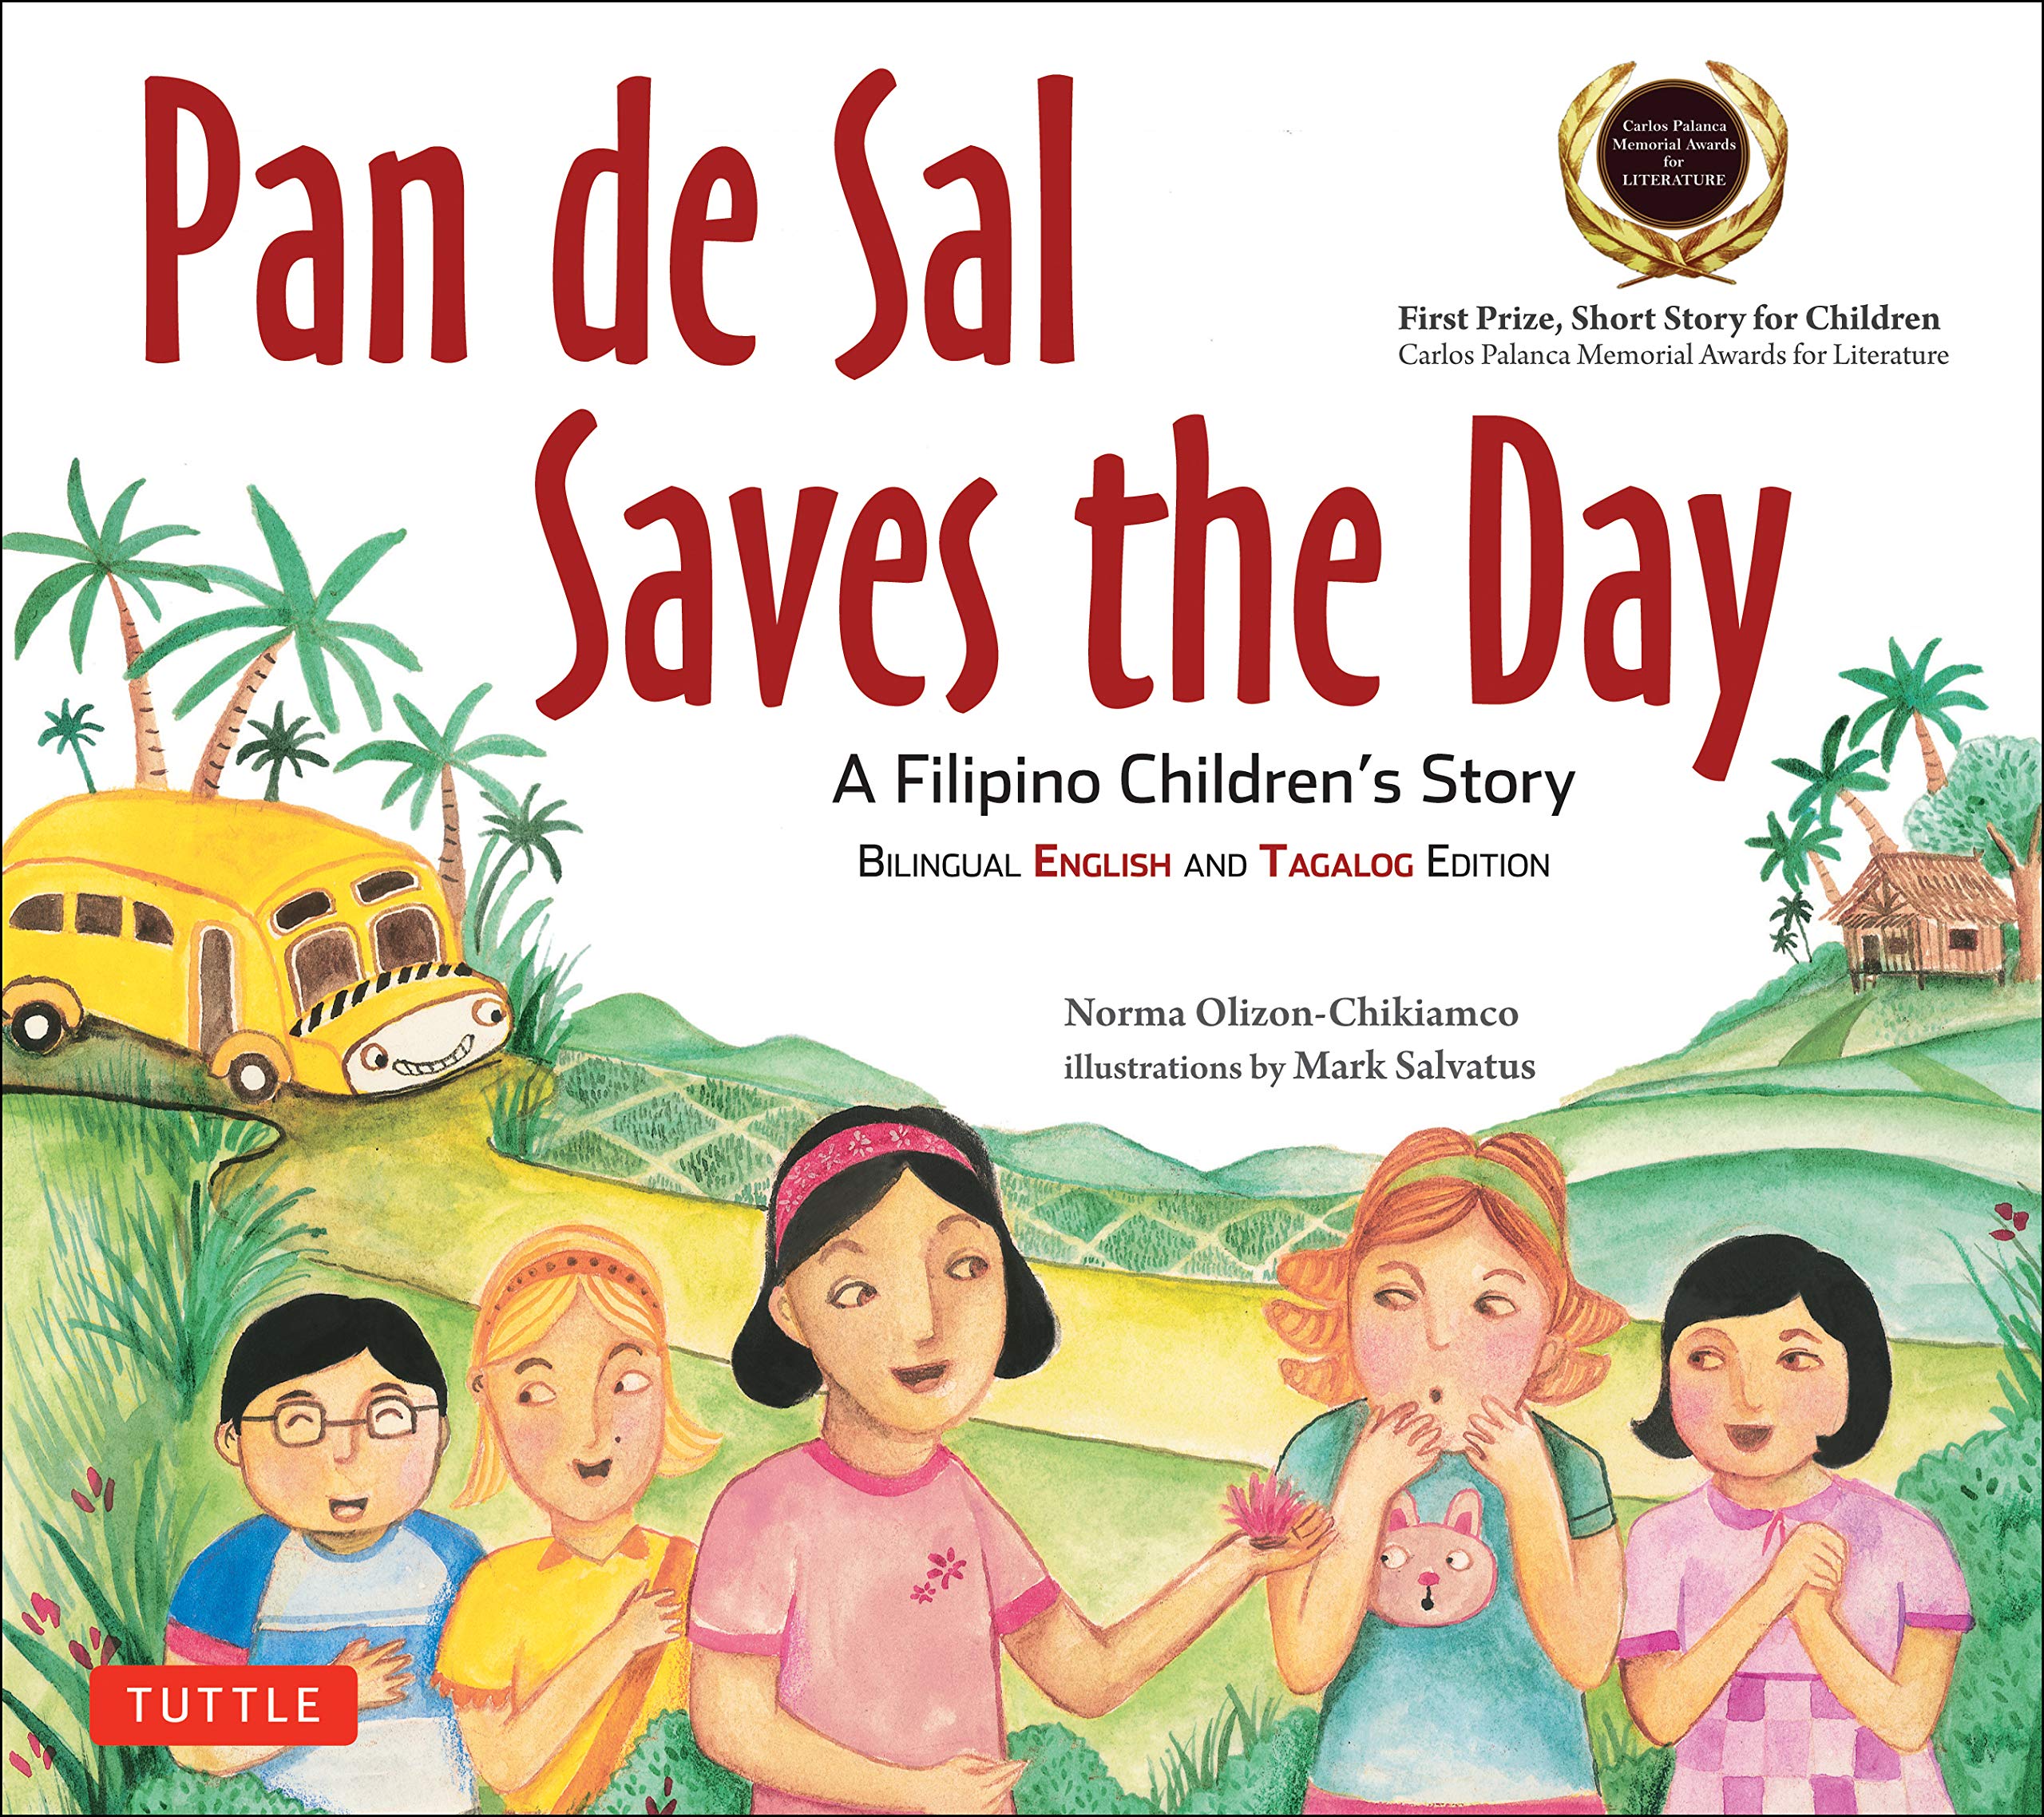 Pan de Sal Saves the Day (Norma Olizon-Chikiamco, Mark Salvatus)